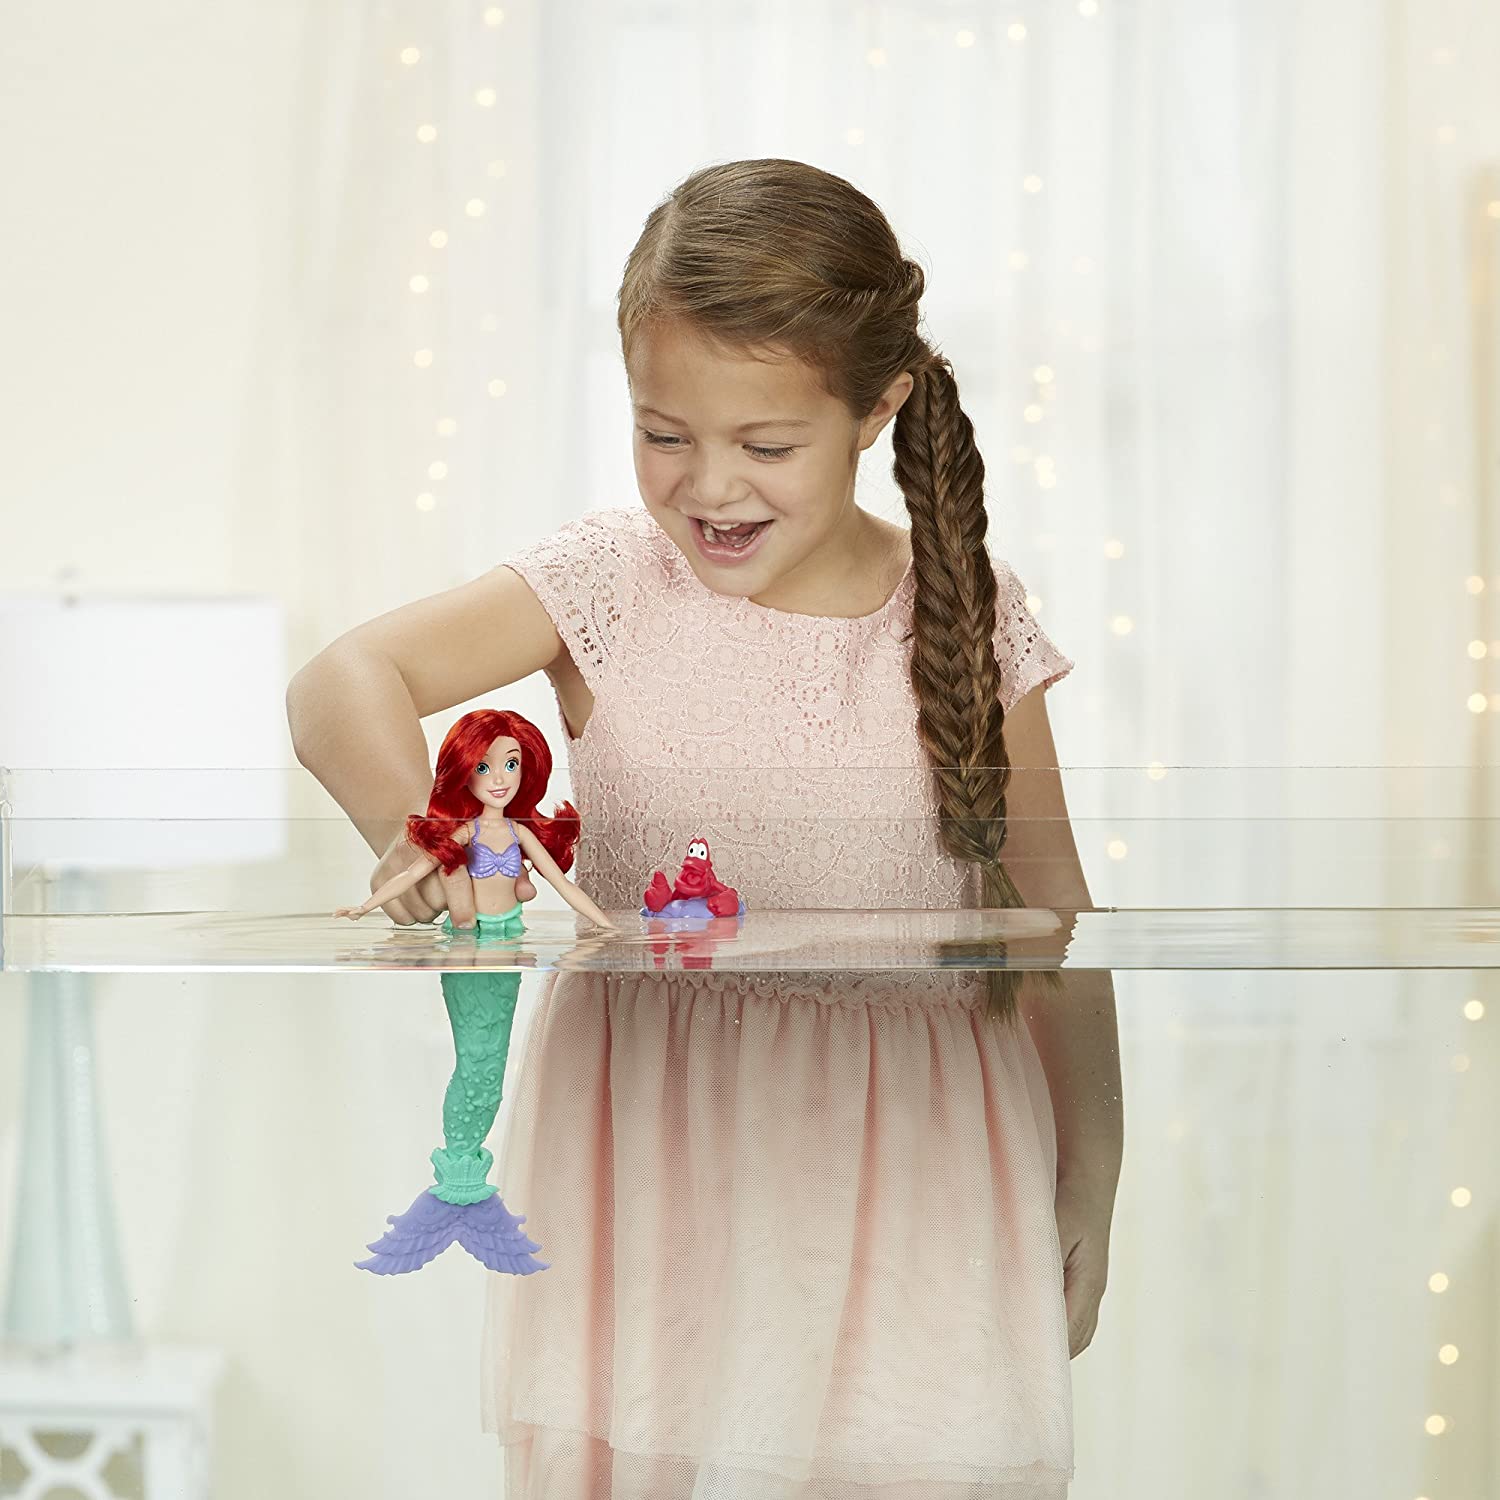 Кукла Disney Princess - Водная тематика Ариэль с Себастьяном, 29 см  